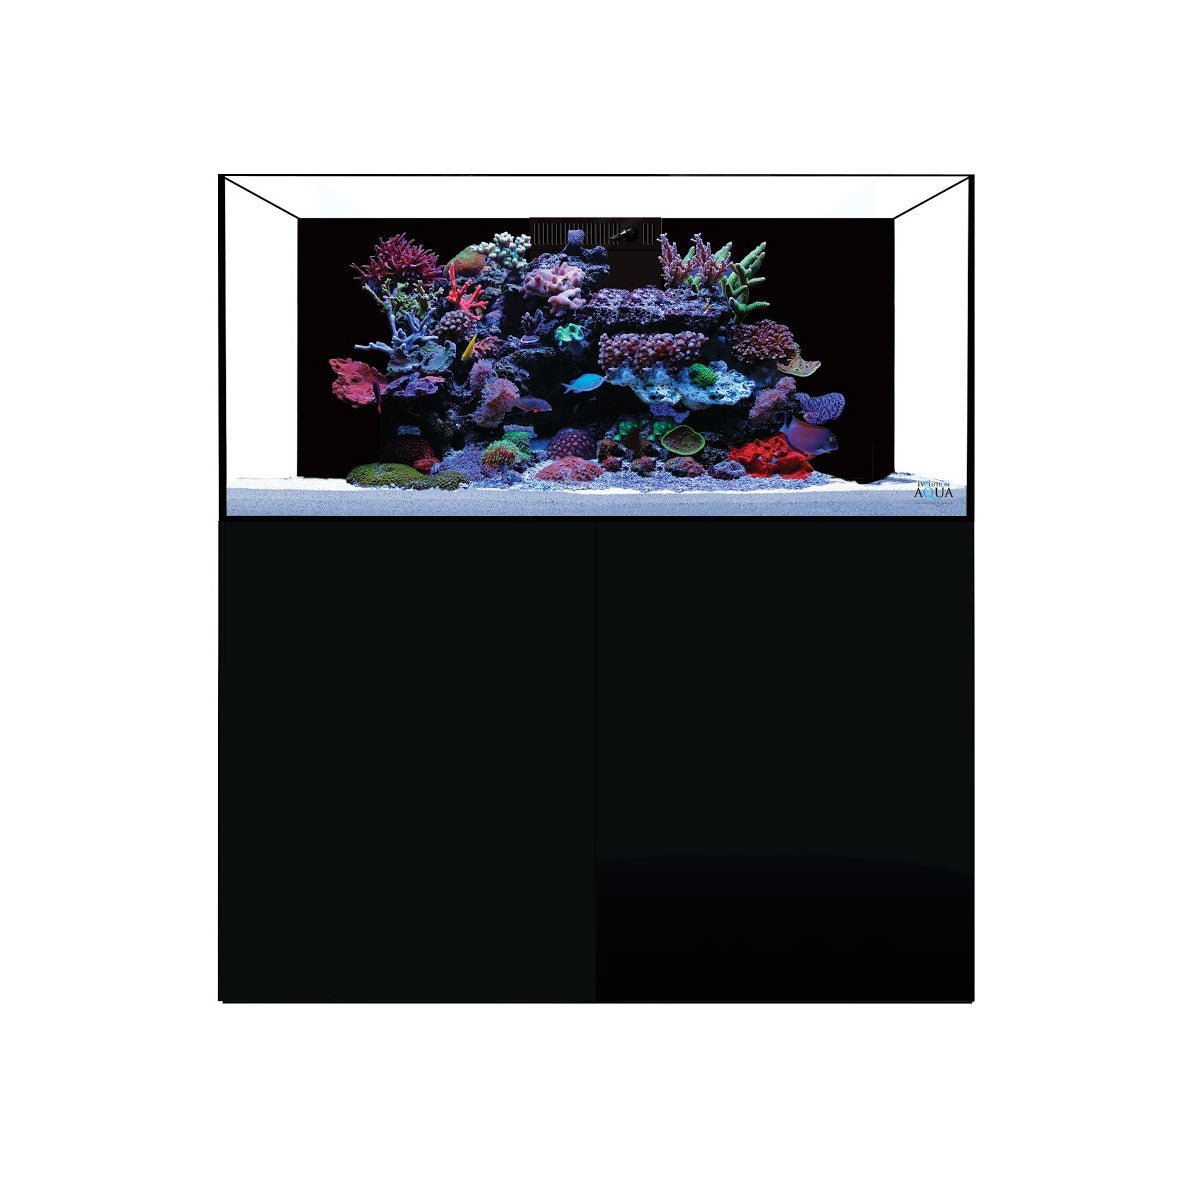 D-D Aqua-Pro Reef 1200 - Natural Oak - Wooden Cabinet - Charterhouse Aquatics